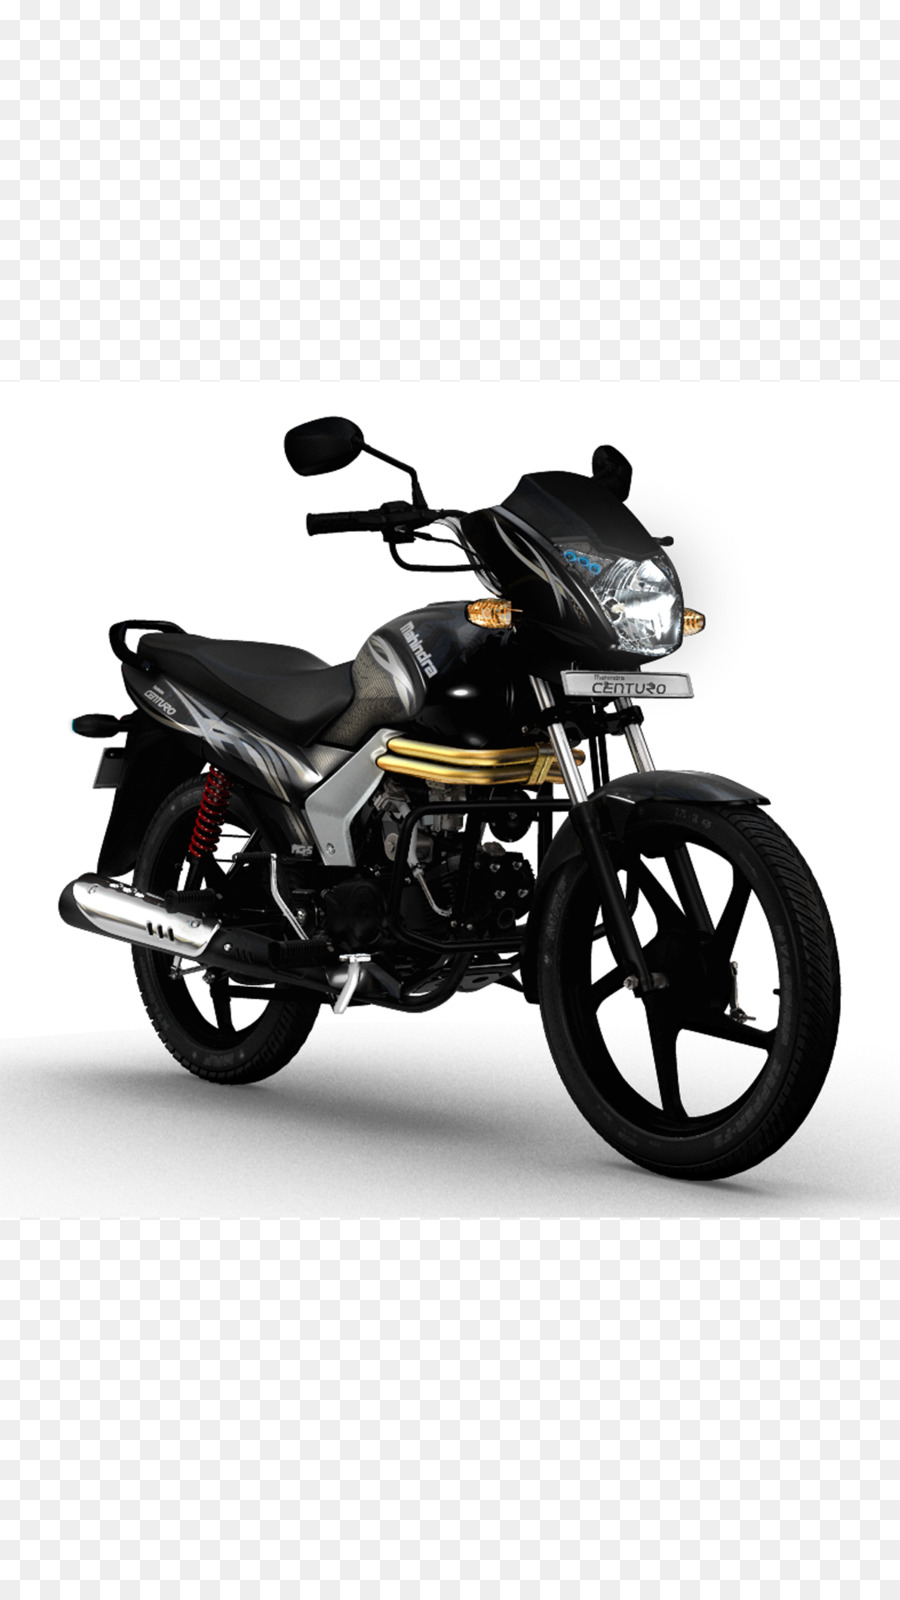 Da Motorcycle fairing Mahindra & Mahindra Mahindra Centuro Motorcycle accessories - Auto